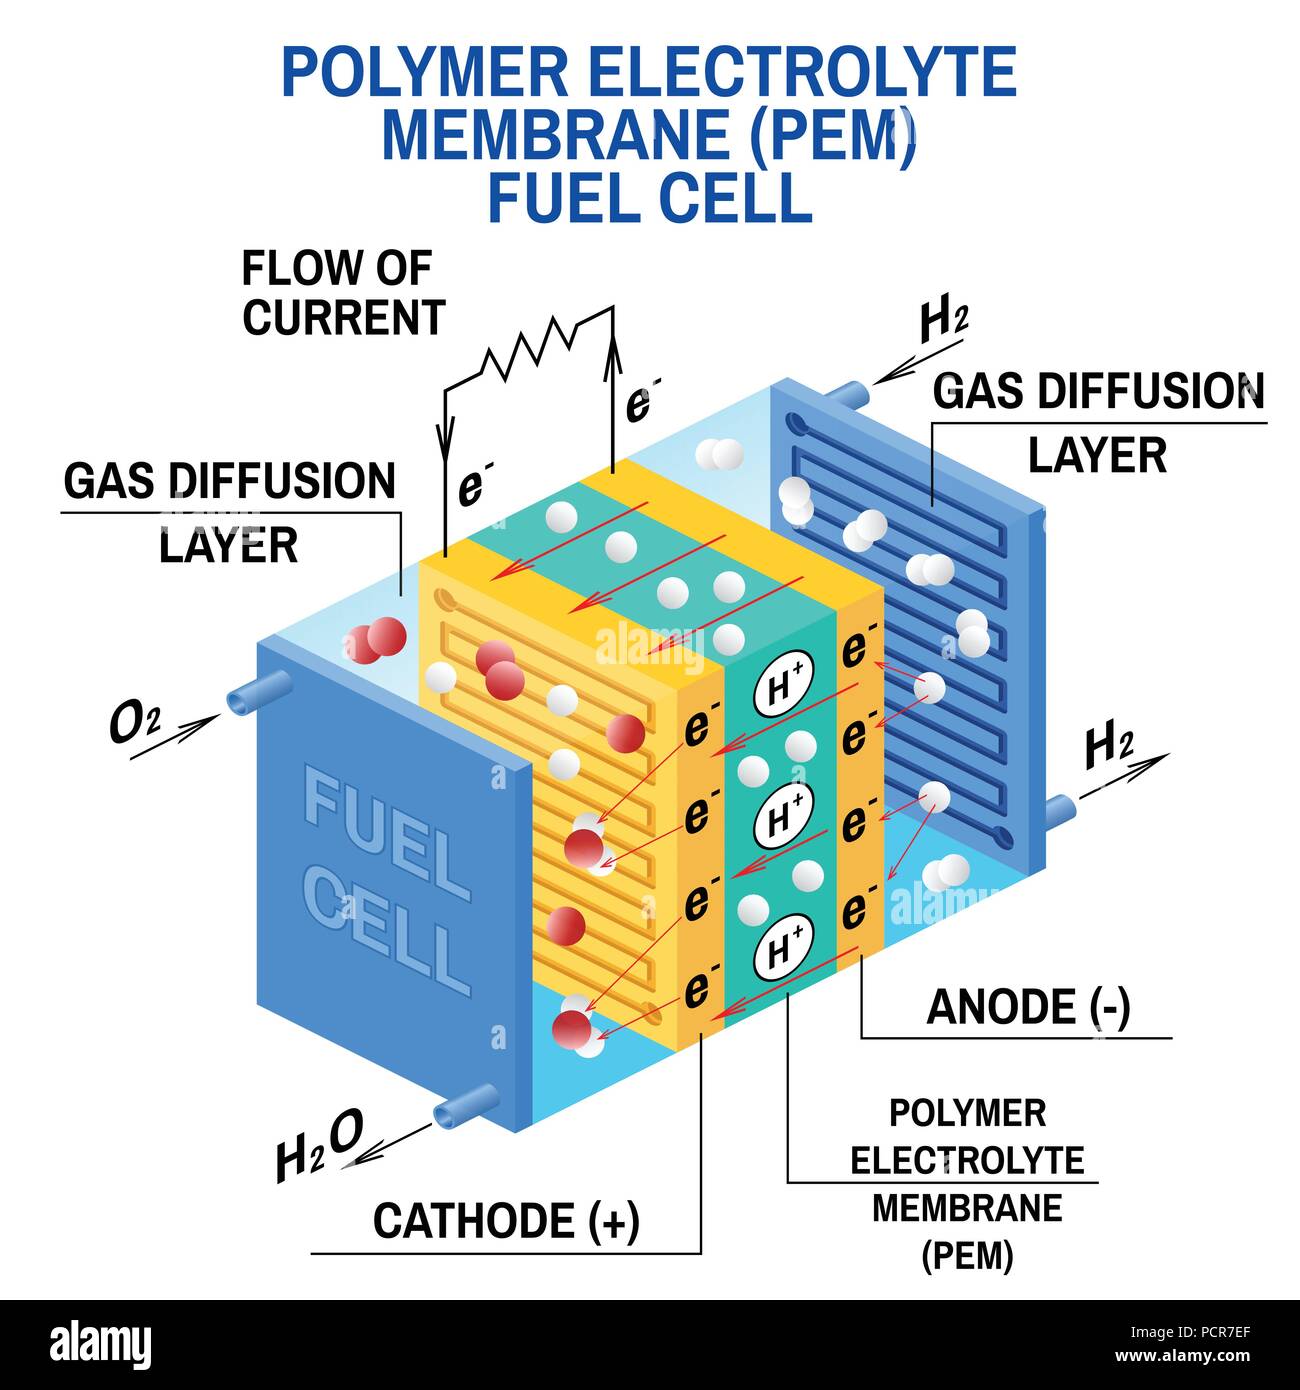 Brennstoffzelle Diagramm. Vektor. Gerät, das wandelt chemische Energie in elektrische Energie um. Ein PEM Proton Exchange Membrane Zelle verwendet Wasserstoff und Sauerstoff Erdgas als Kraftstoff. Stock Vektor